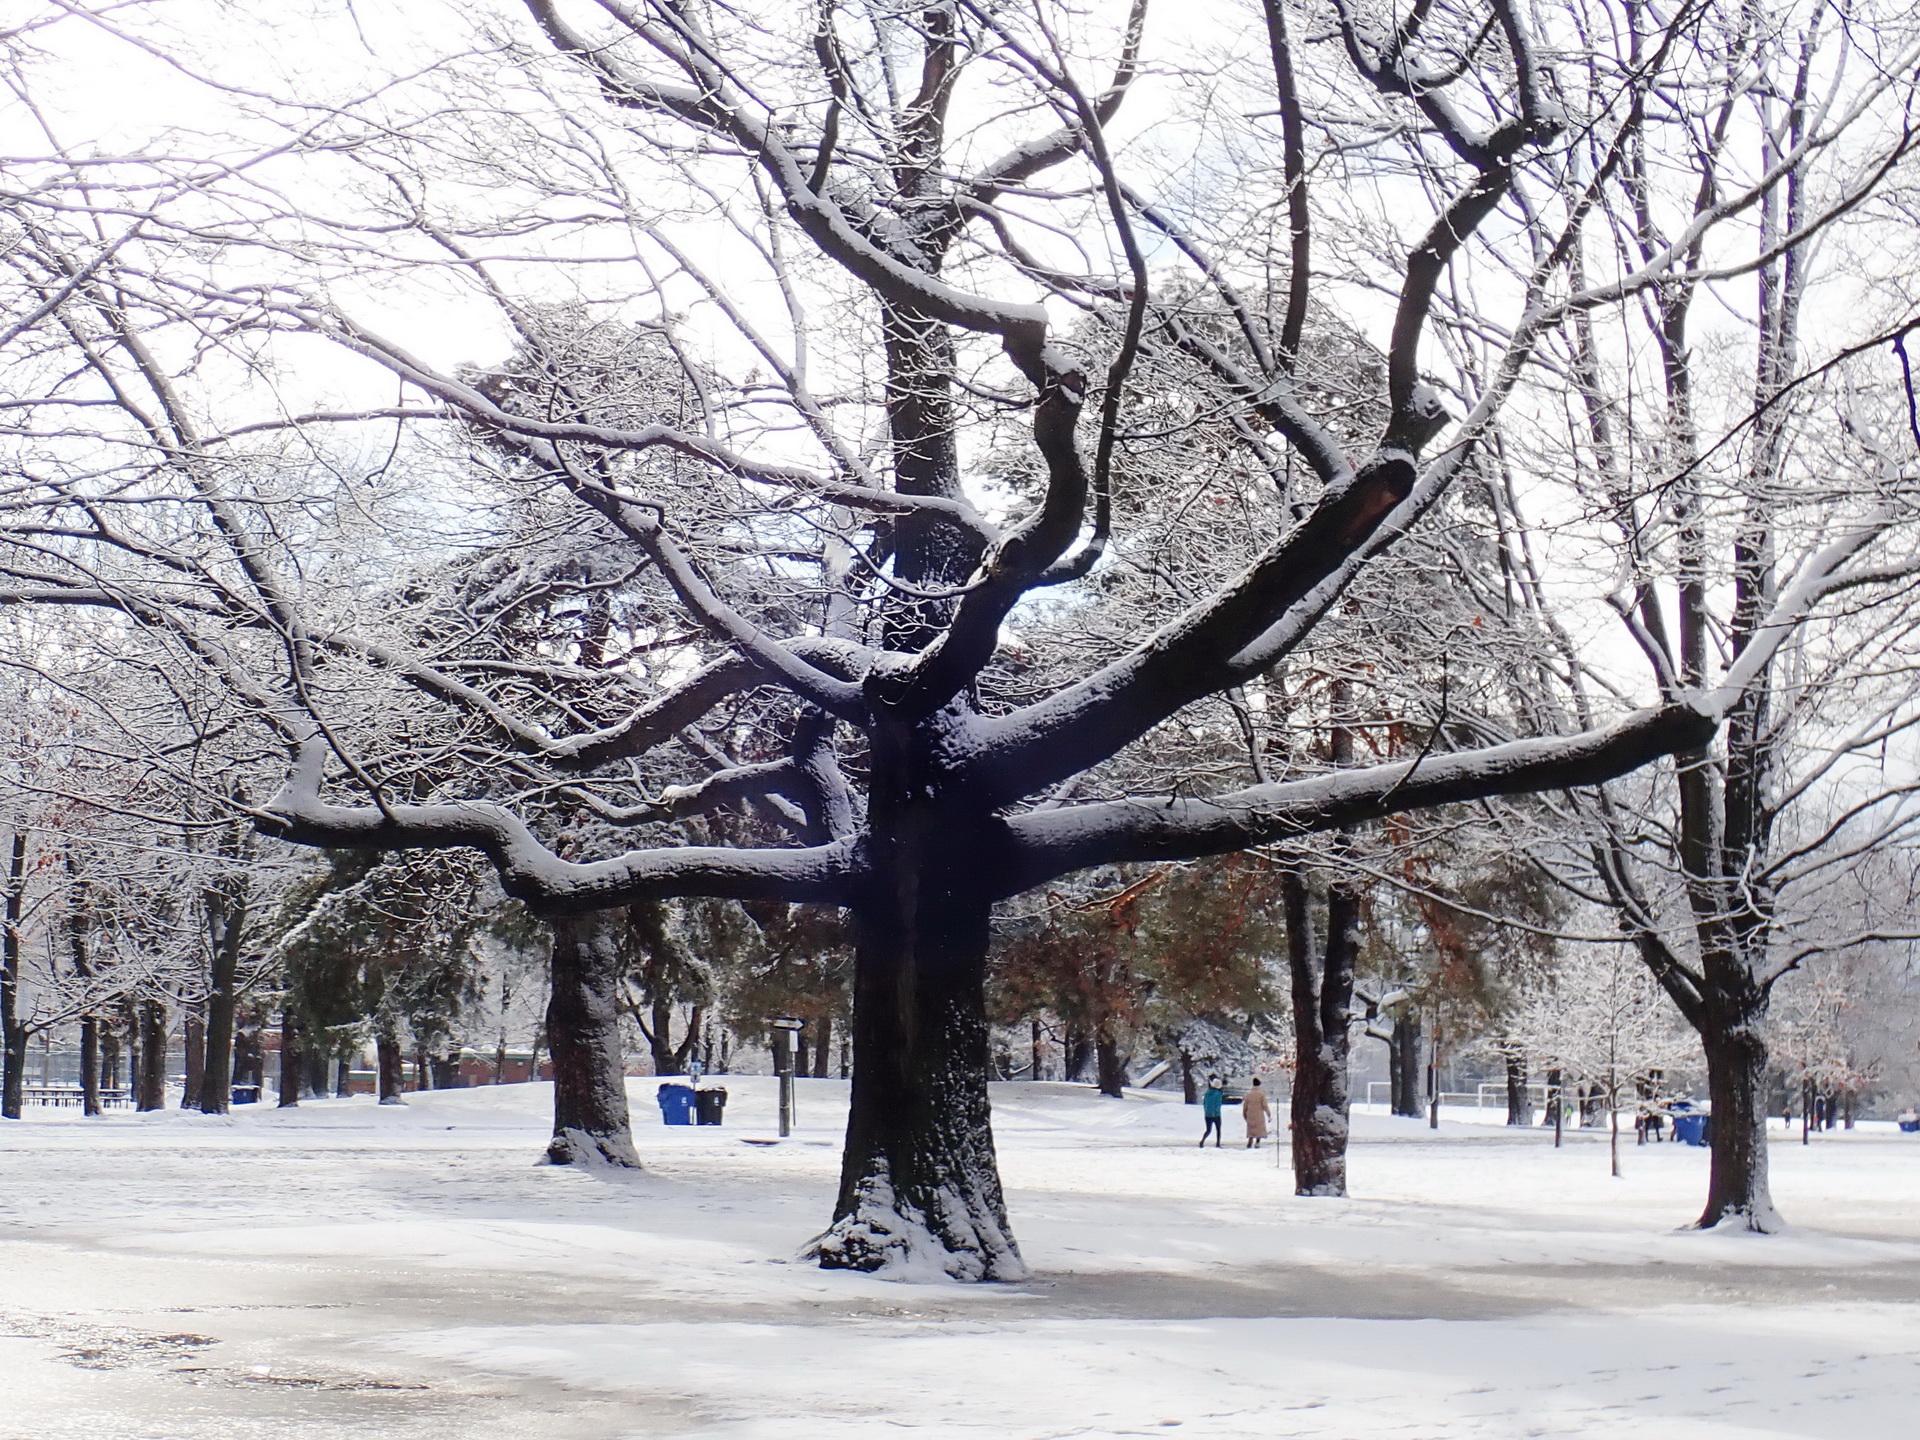 Oak in winter. Photo: Karen Yukich